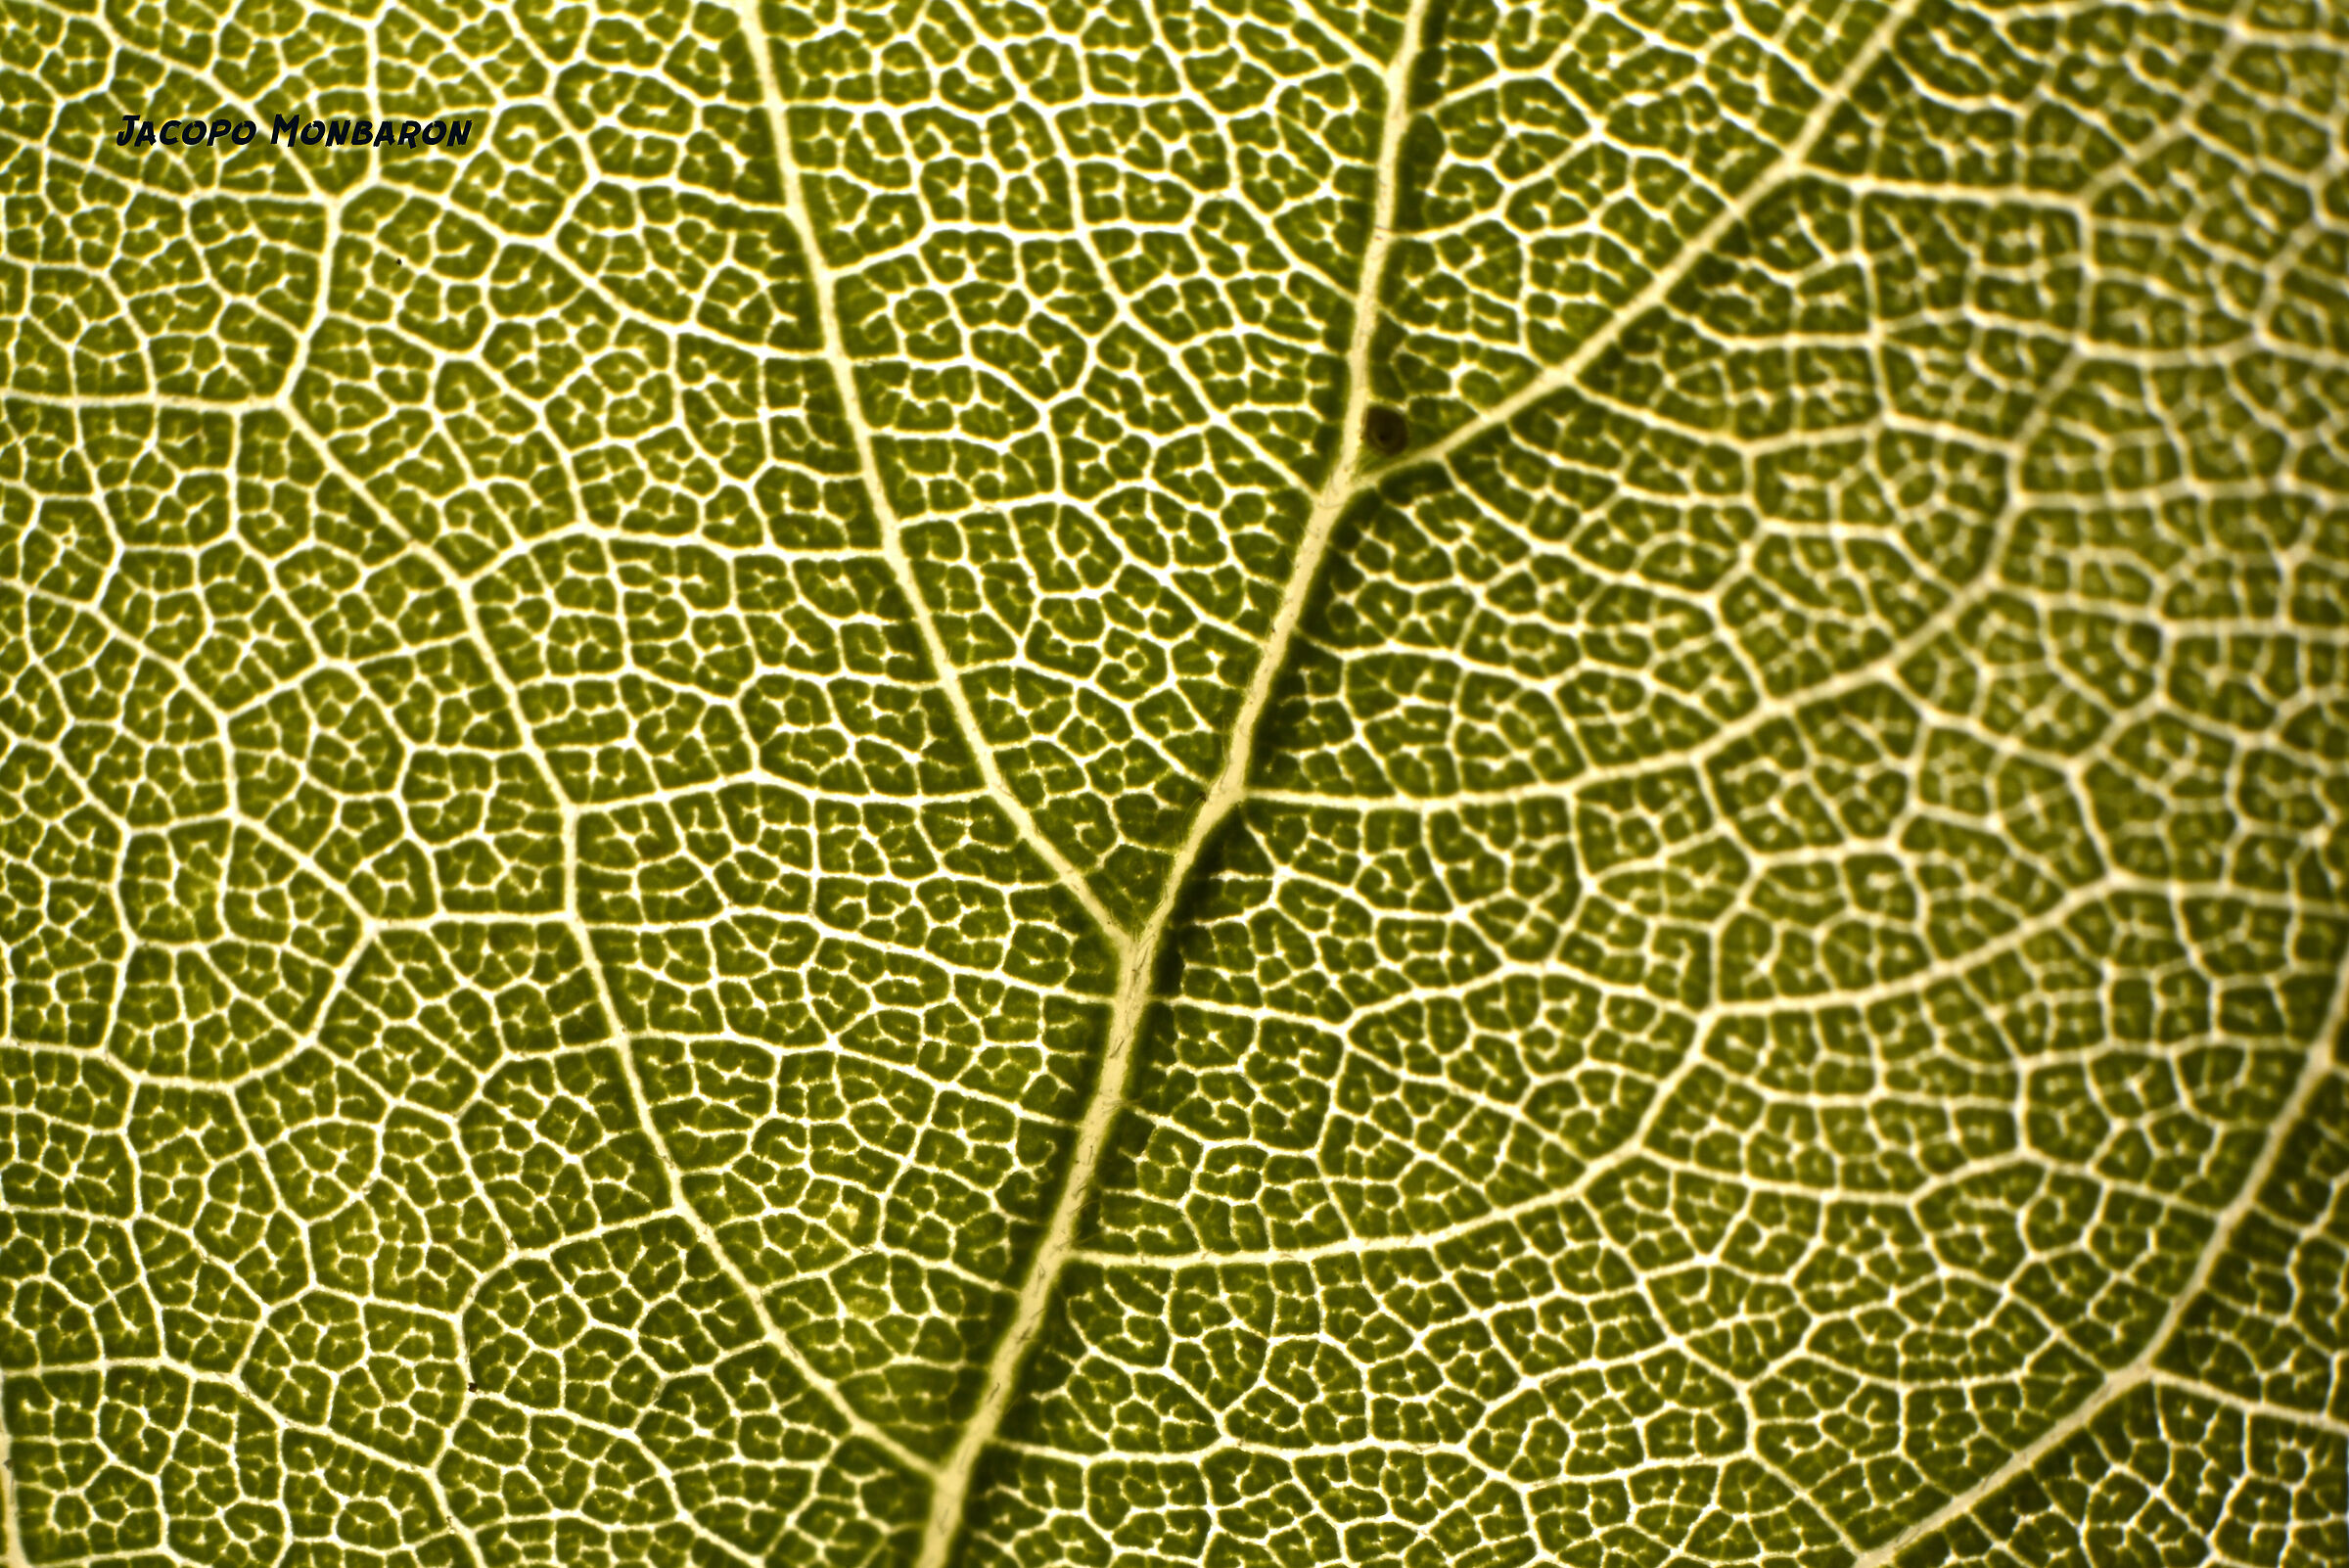 trails of a leaf ...